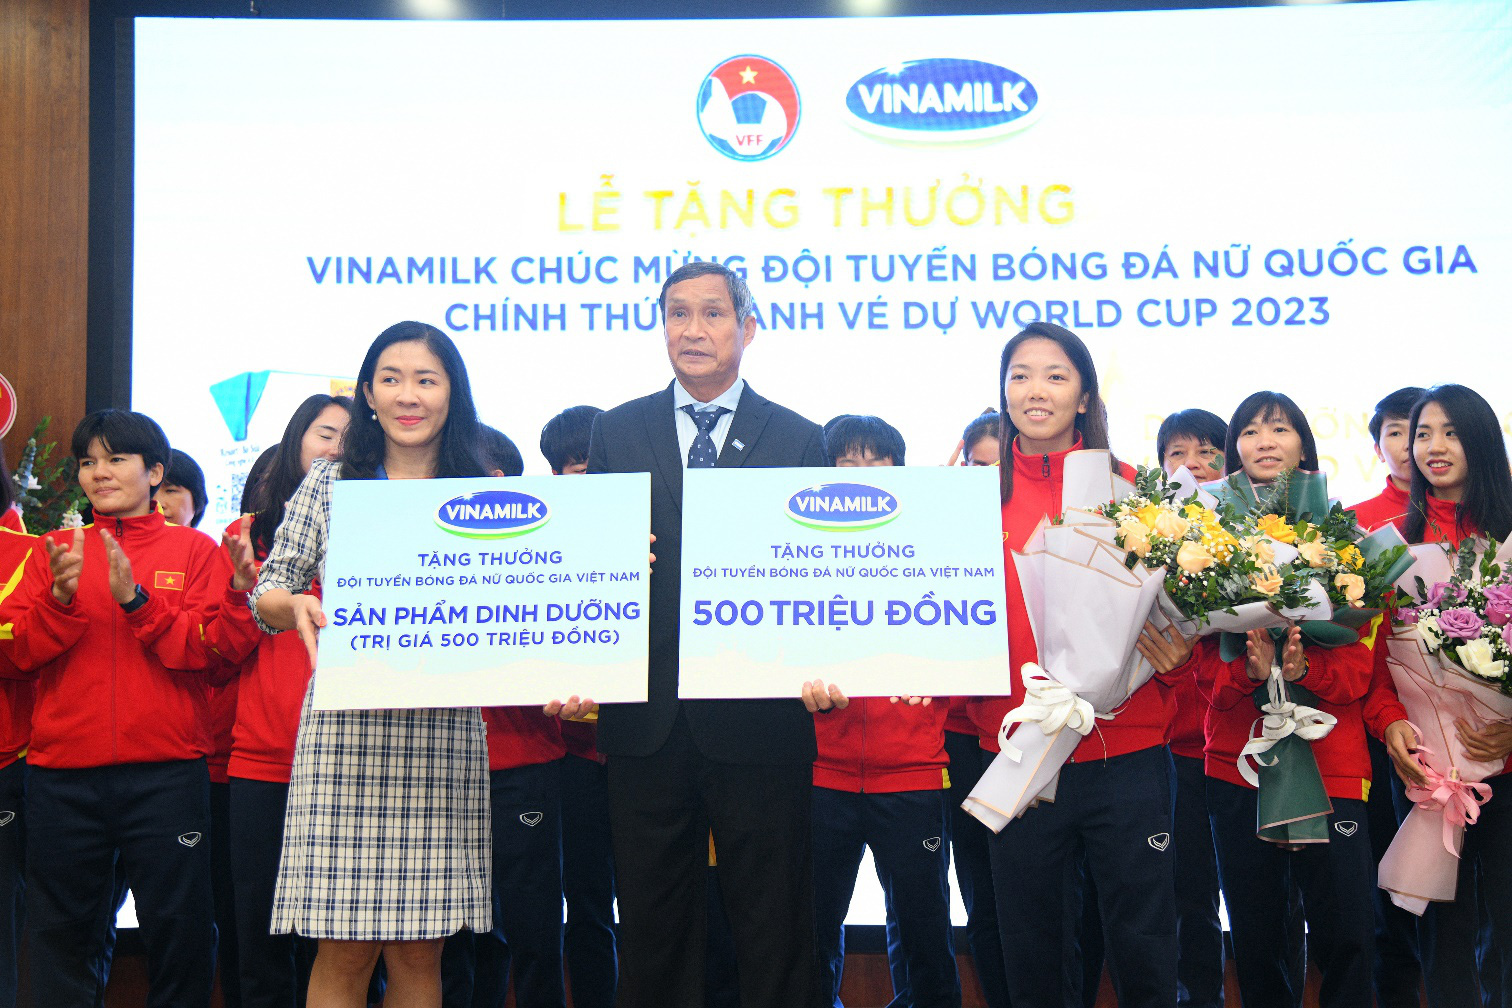 Vinamilk trao thưởng 500 triệu tiền mặt và 2 năm sử dụng sản phẩm để chúc mừng thành tích đội tuyển bóng đá nữ quốc gia - Ảnh 1.